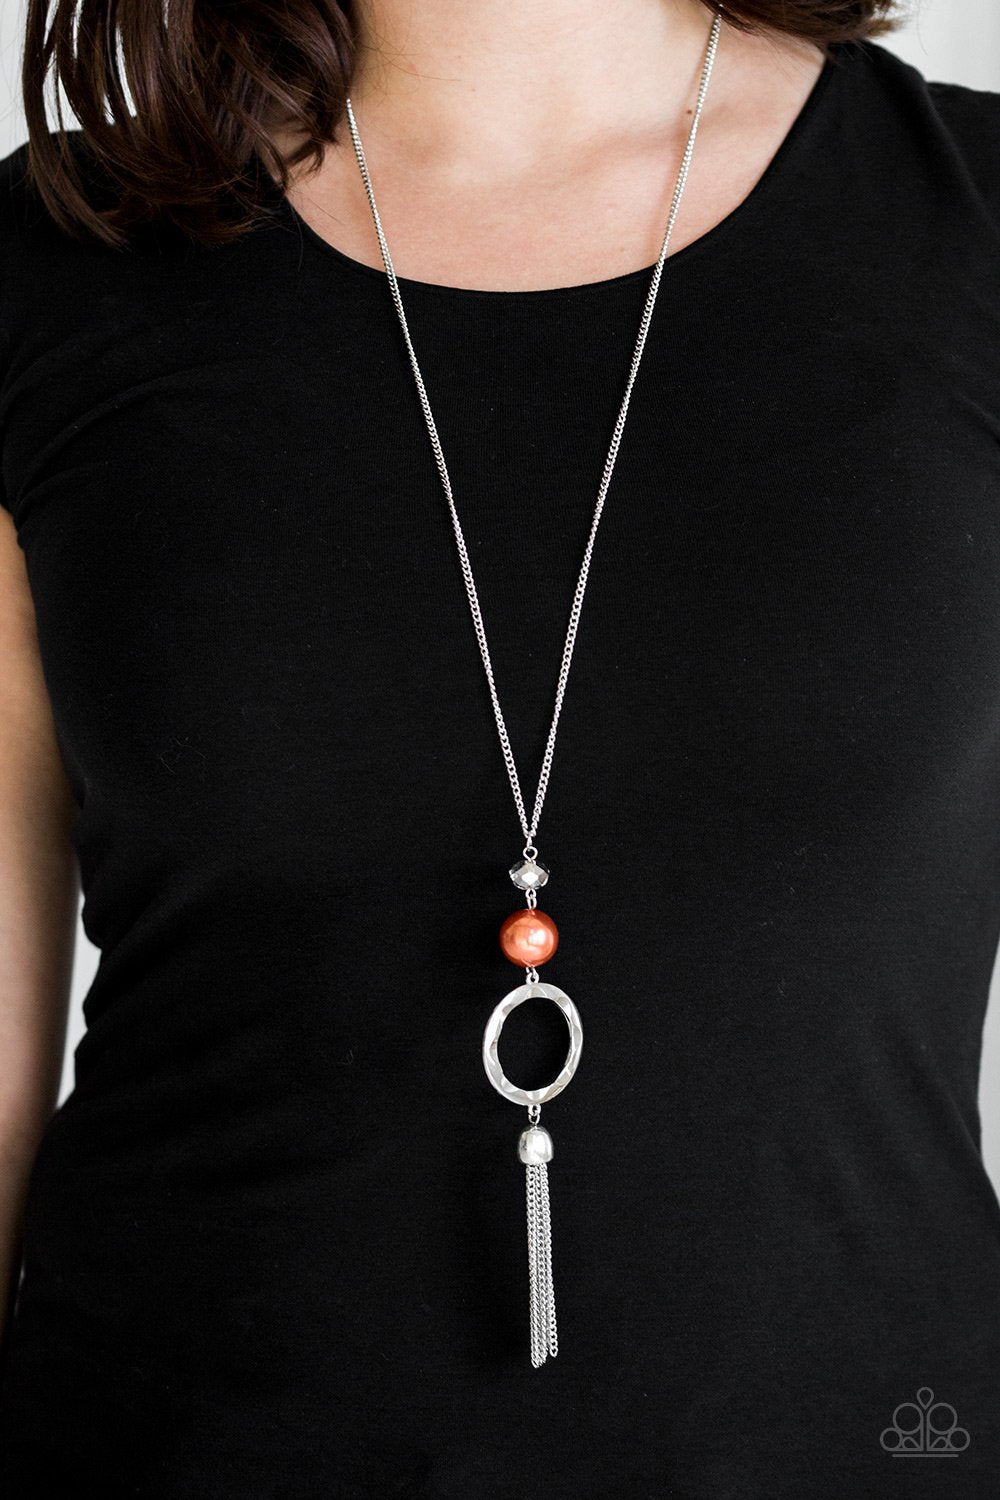 Bold Balancing Act - Orange necklace